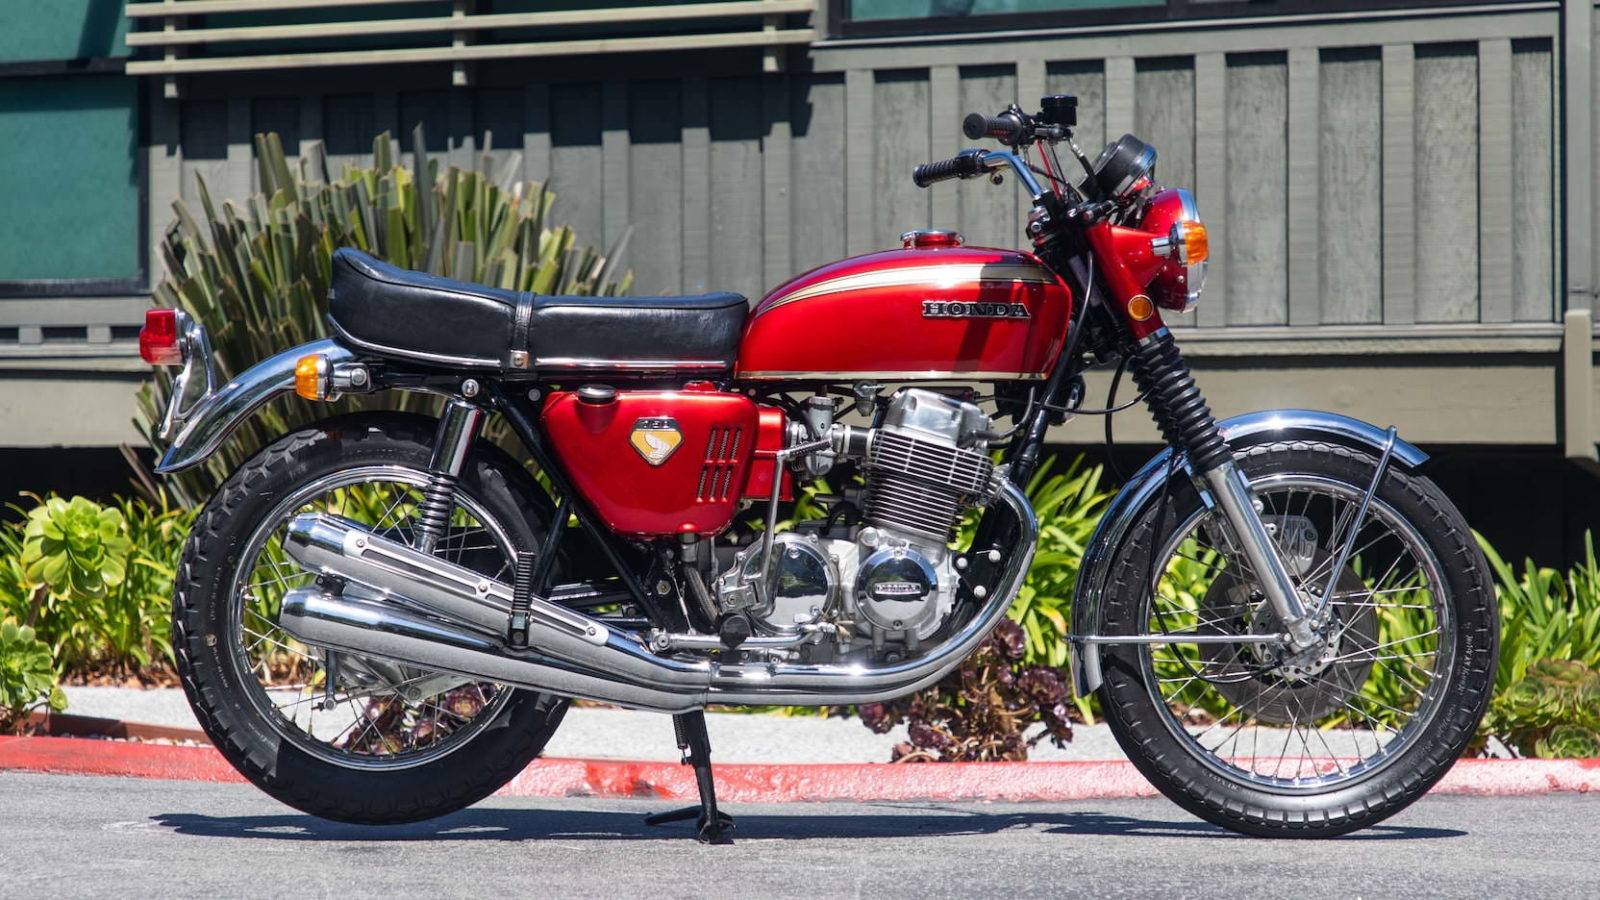 1969 Honda CB750 Fire profilvisning